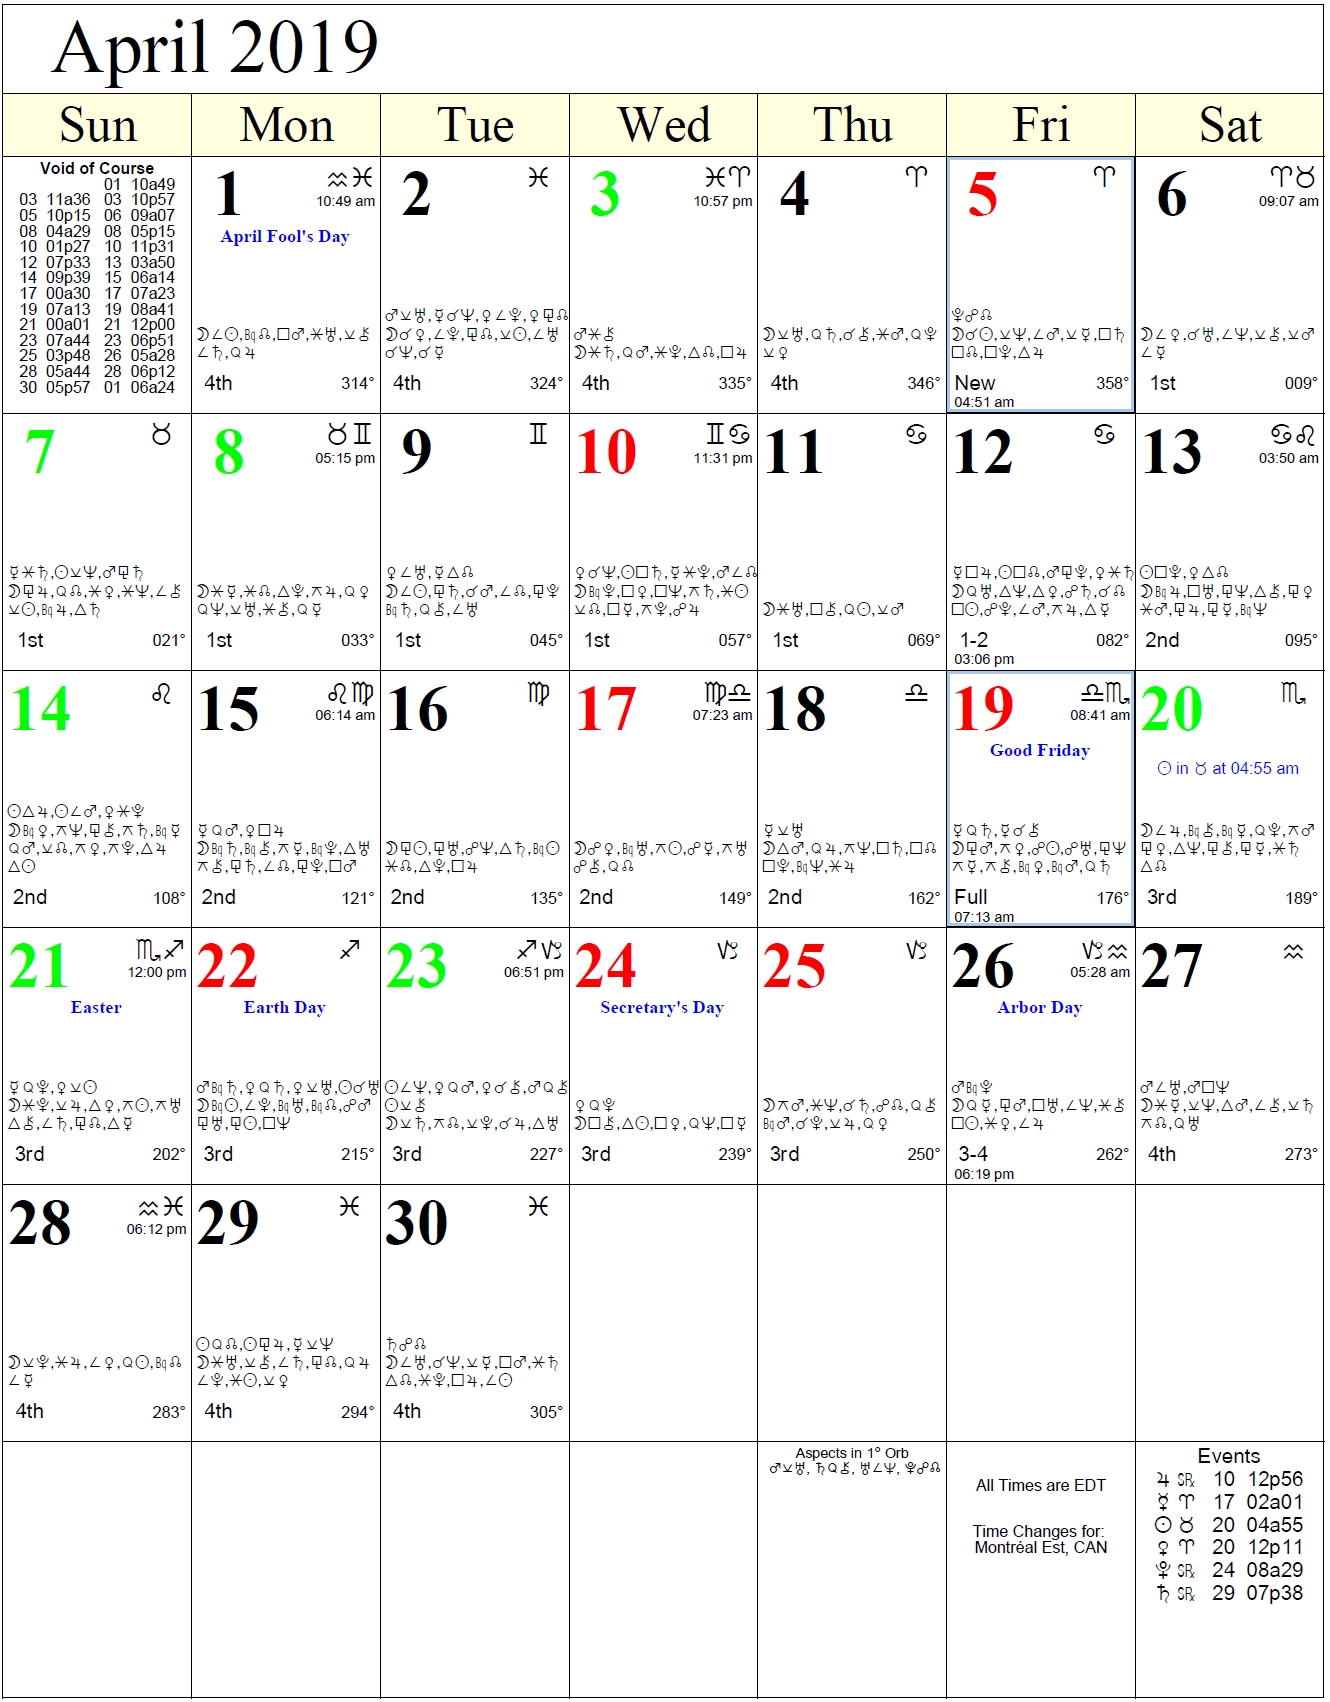 moon astrological calendar